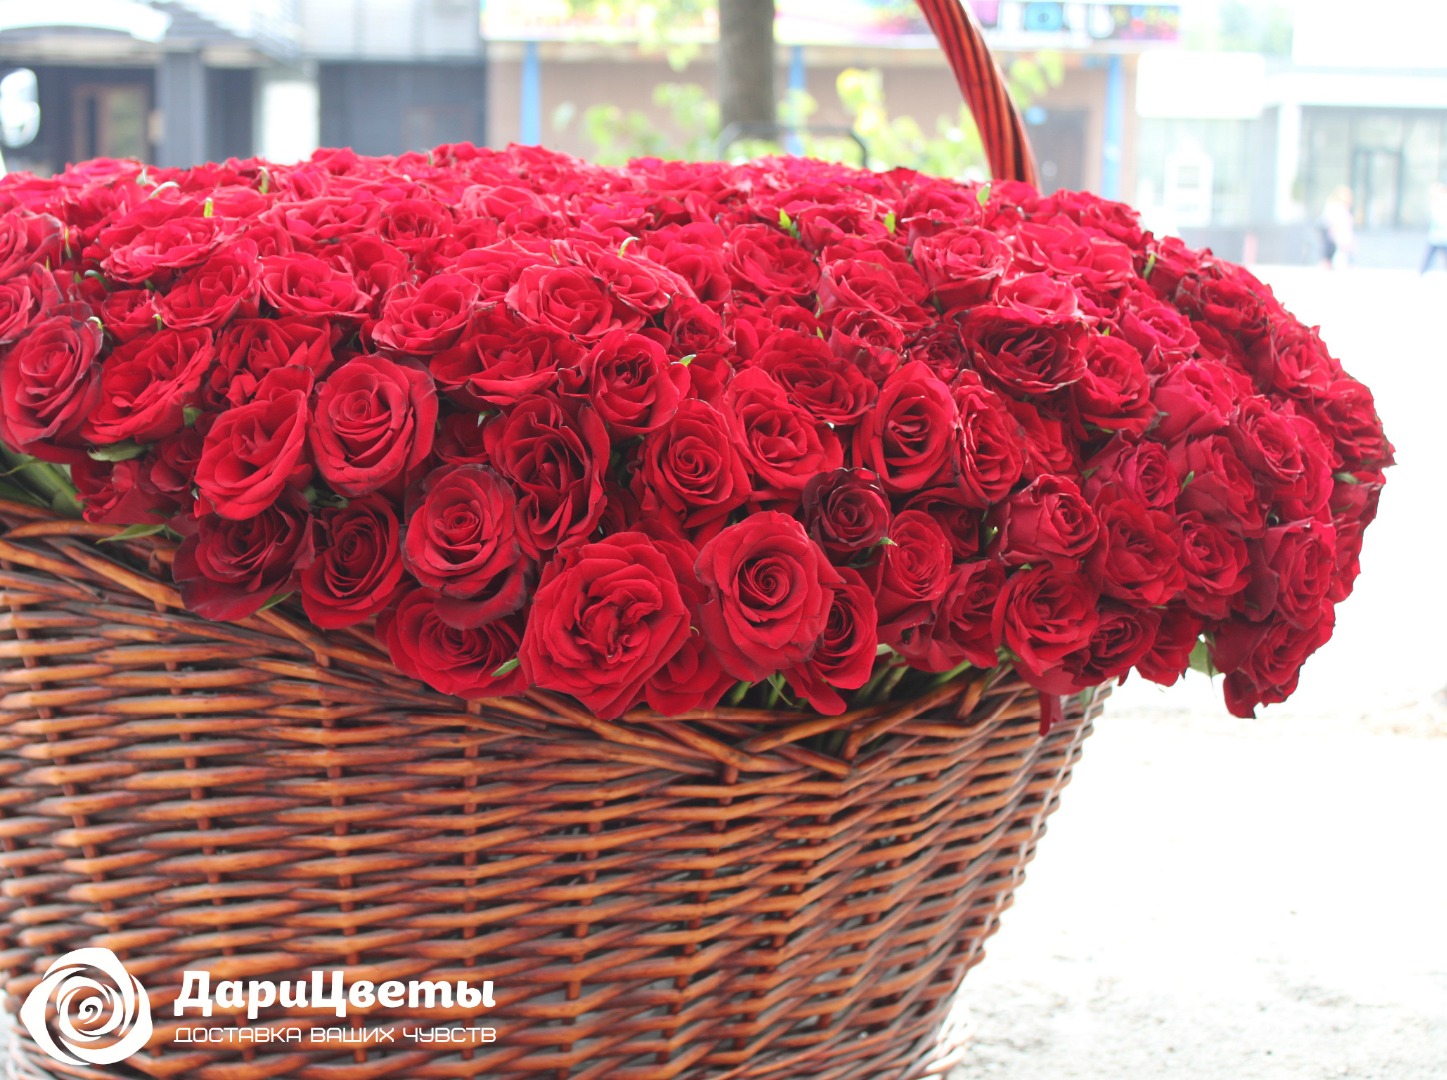 Корзина 1001 роза заказать с доставкой в Челябинске - салон «Дари Цветы» |  Купить букет 1001 роза